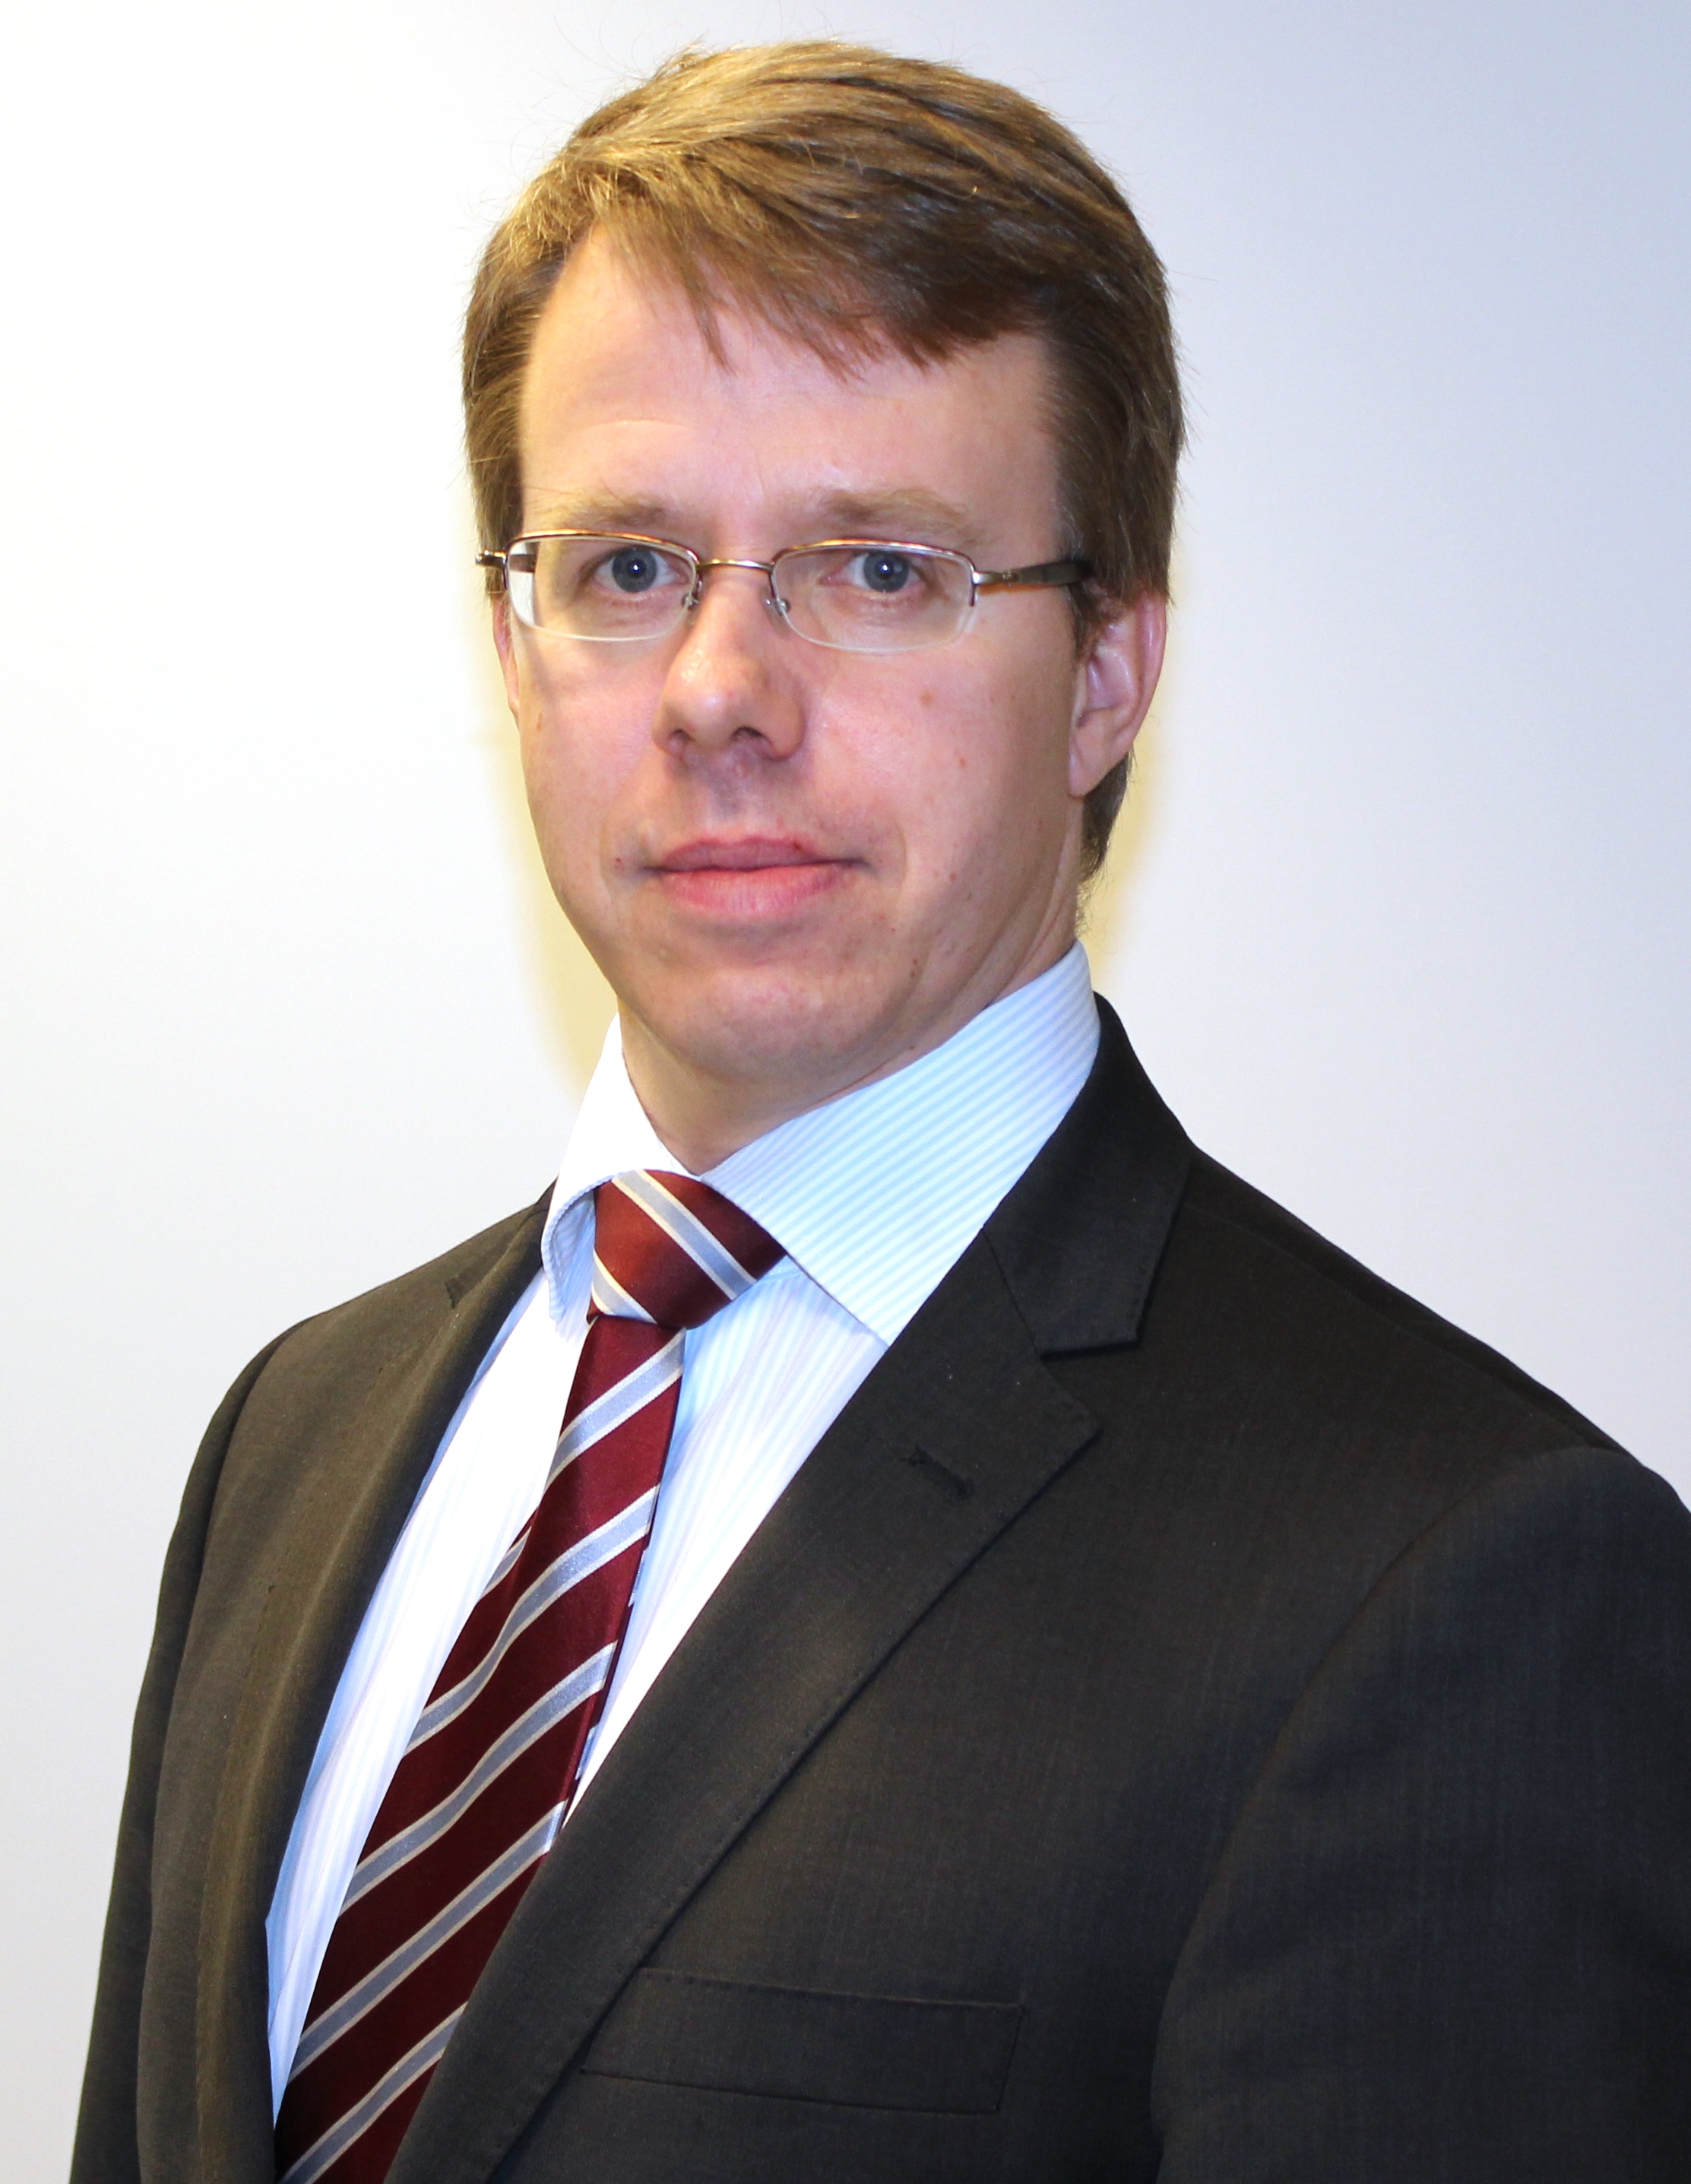 Antti Helanterän vastuulle EU-edustustossa kuuluvat Venäjä, Itä-Eurooppa ja Keski-Aasia